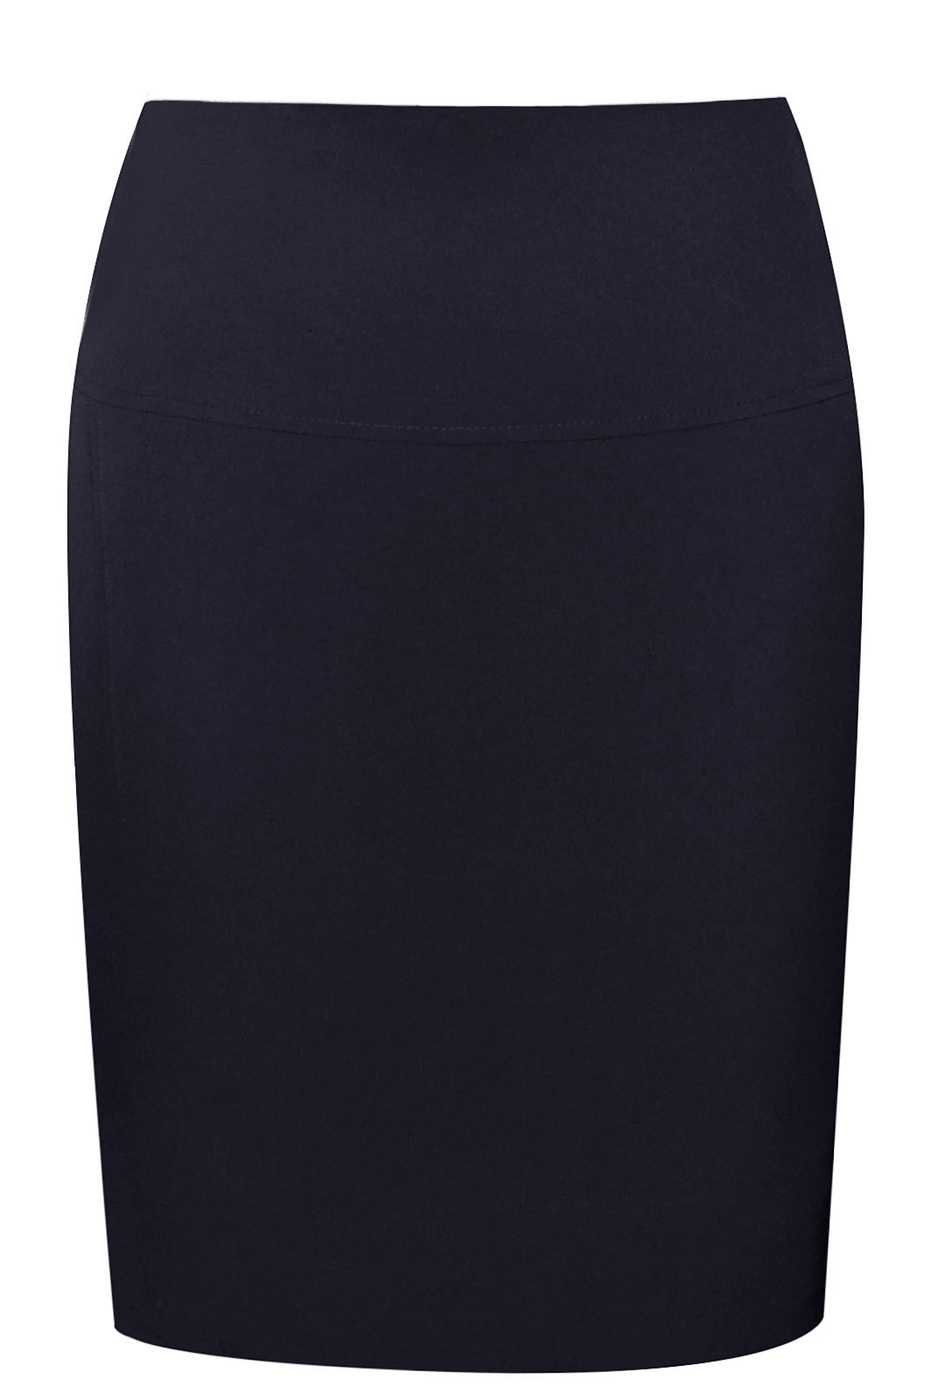 Чёрная юбка-карандаш – это просто стильная находка в вашем гардеробе Каковы ее особенности и кому пойдет С чем можно носить Эффектные образы